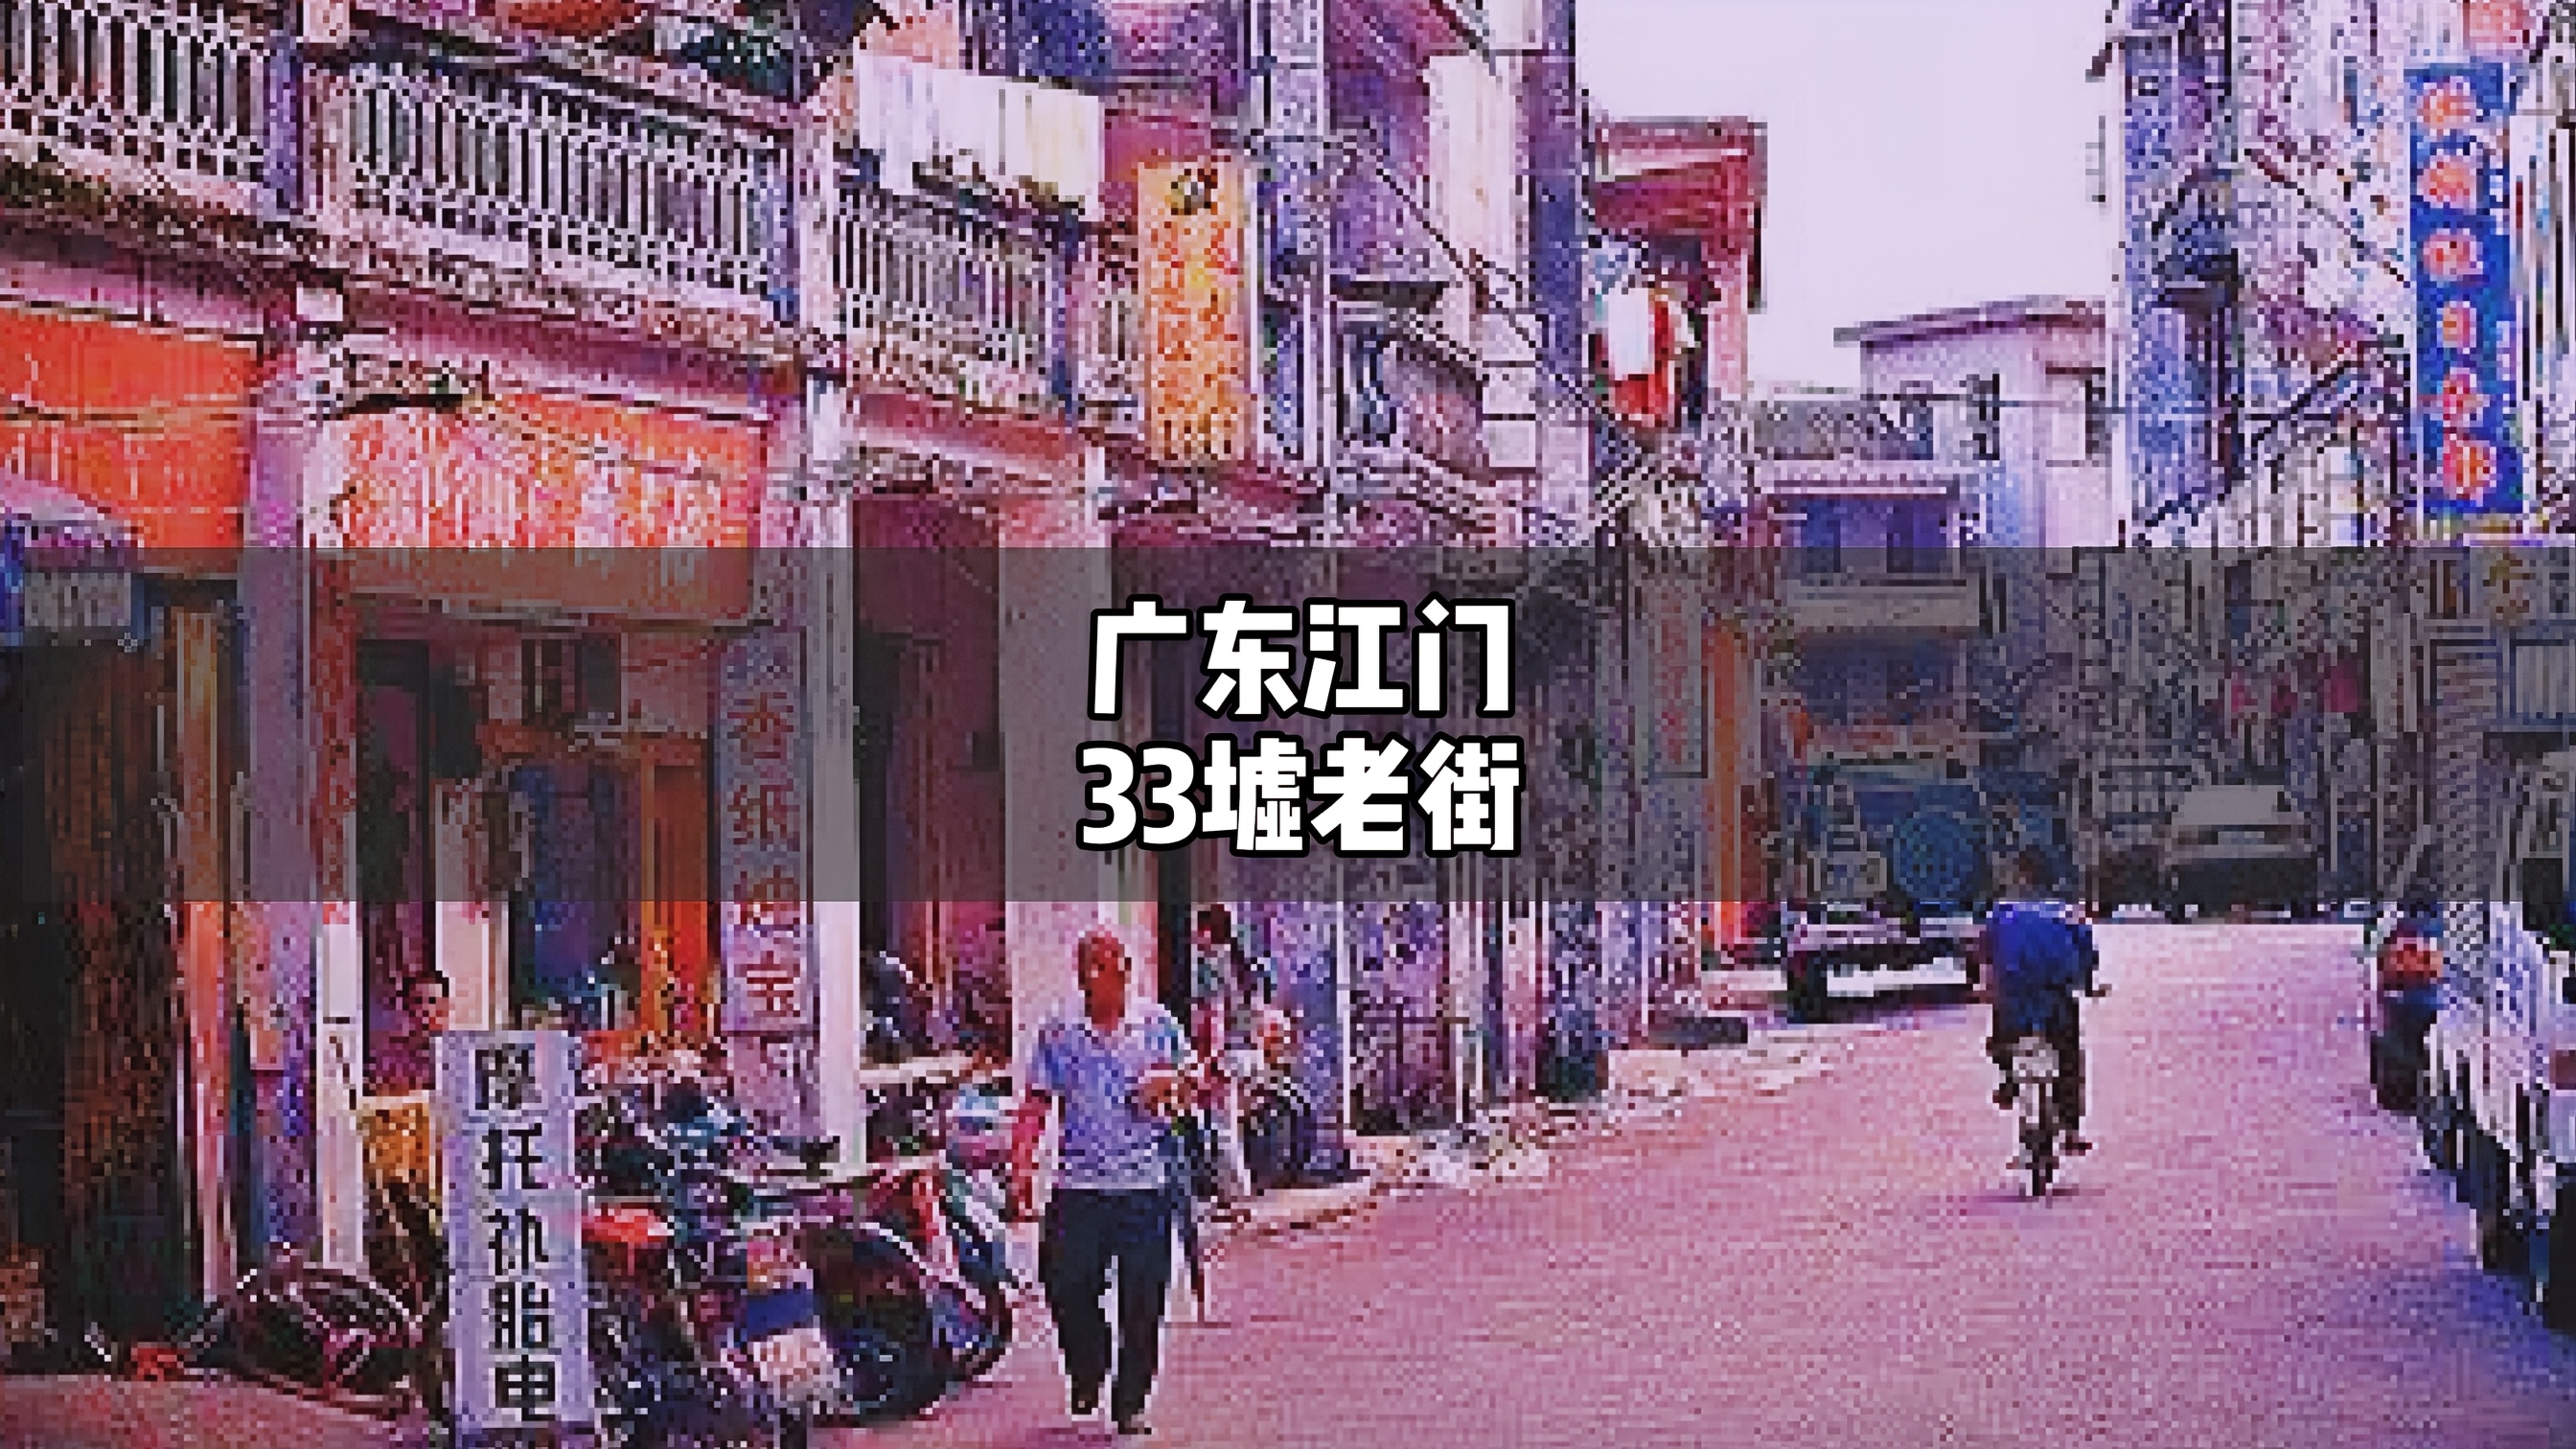 中國第一僑鄉 廣東江門33墟老街風雨滄桑 曾經的繁華歷歷在目 歷史興衰的見證者